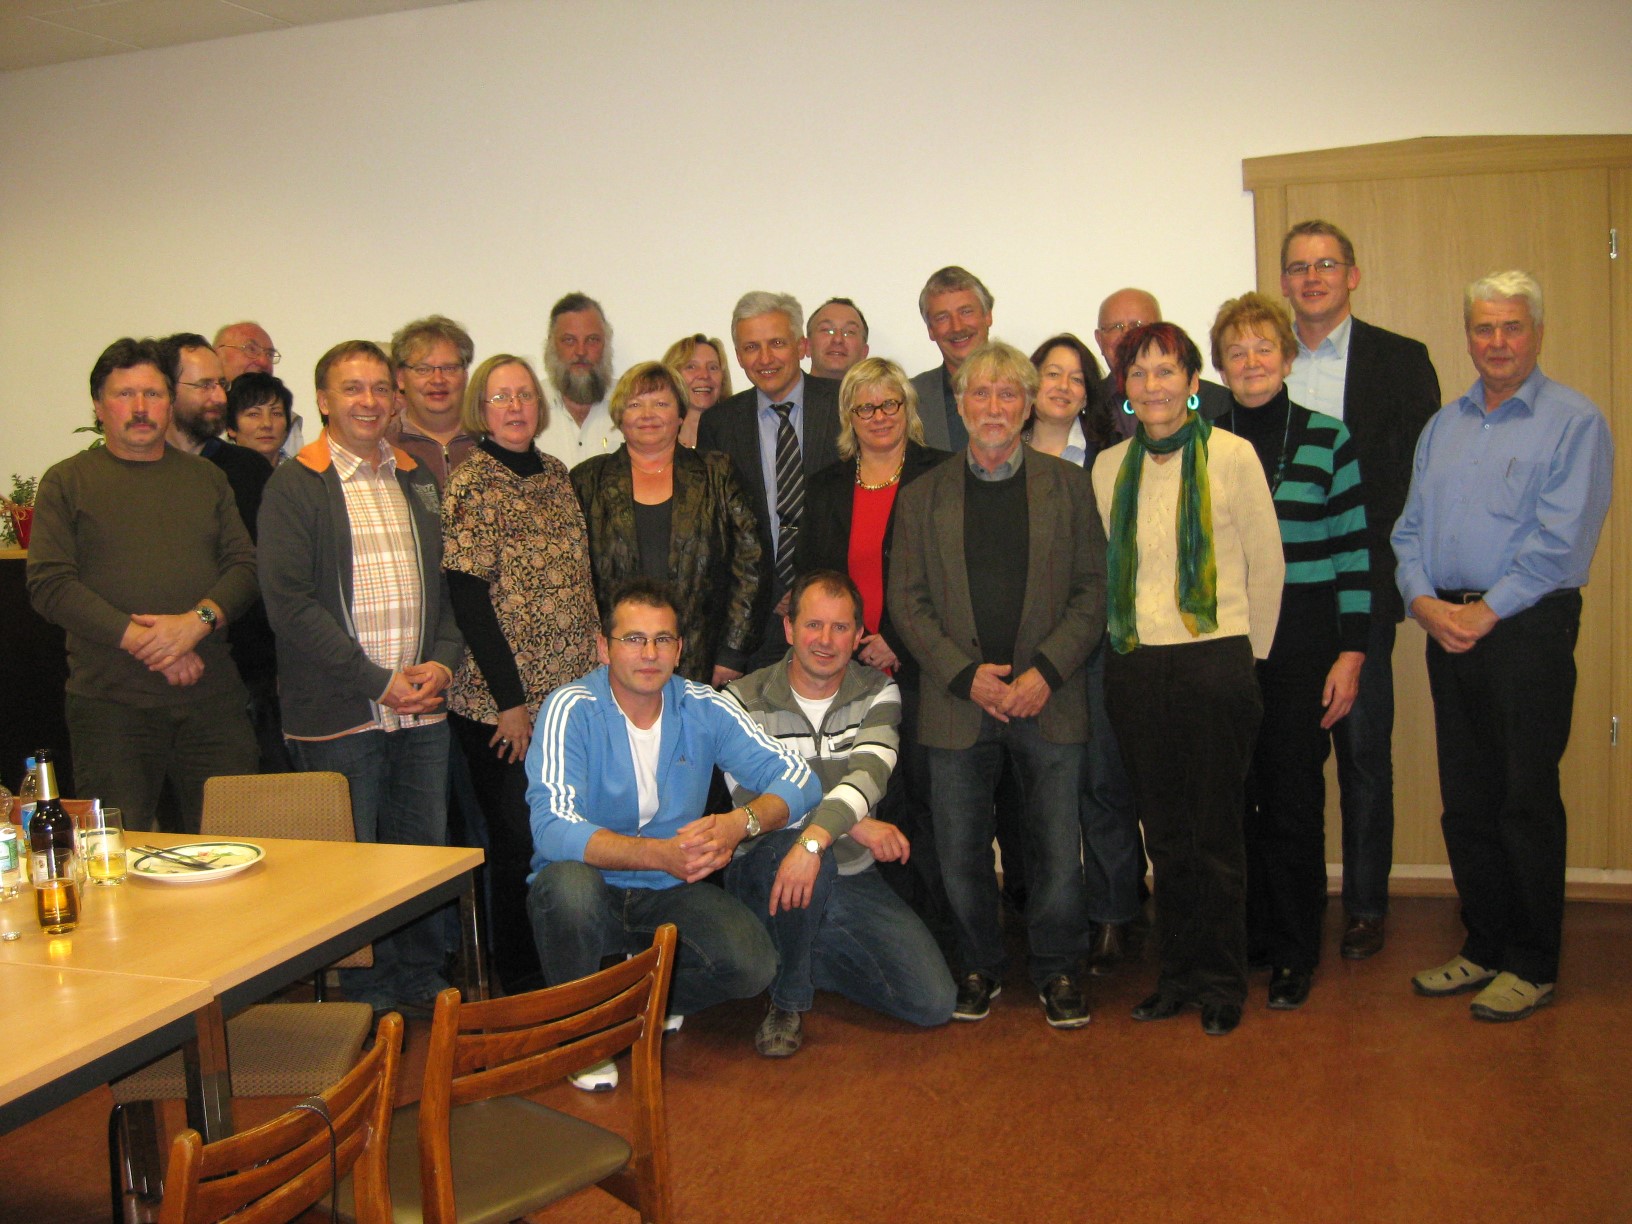 Manfred kolbe, MdB (mitte) mit den Teilnehmern der Mehrgenerationenhaus-Werkstatt.